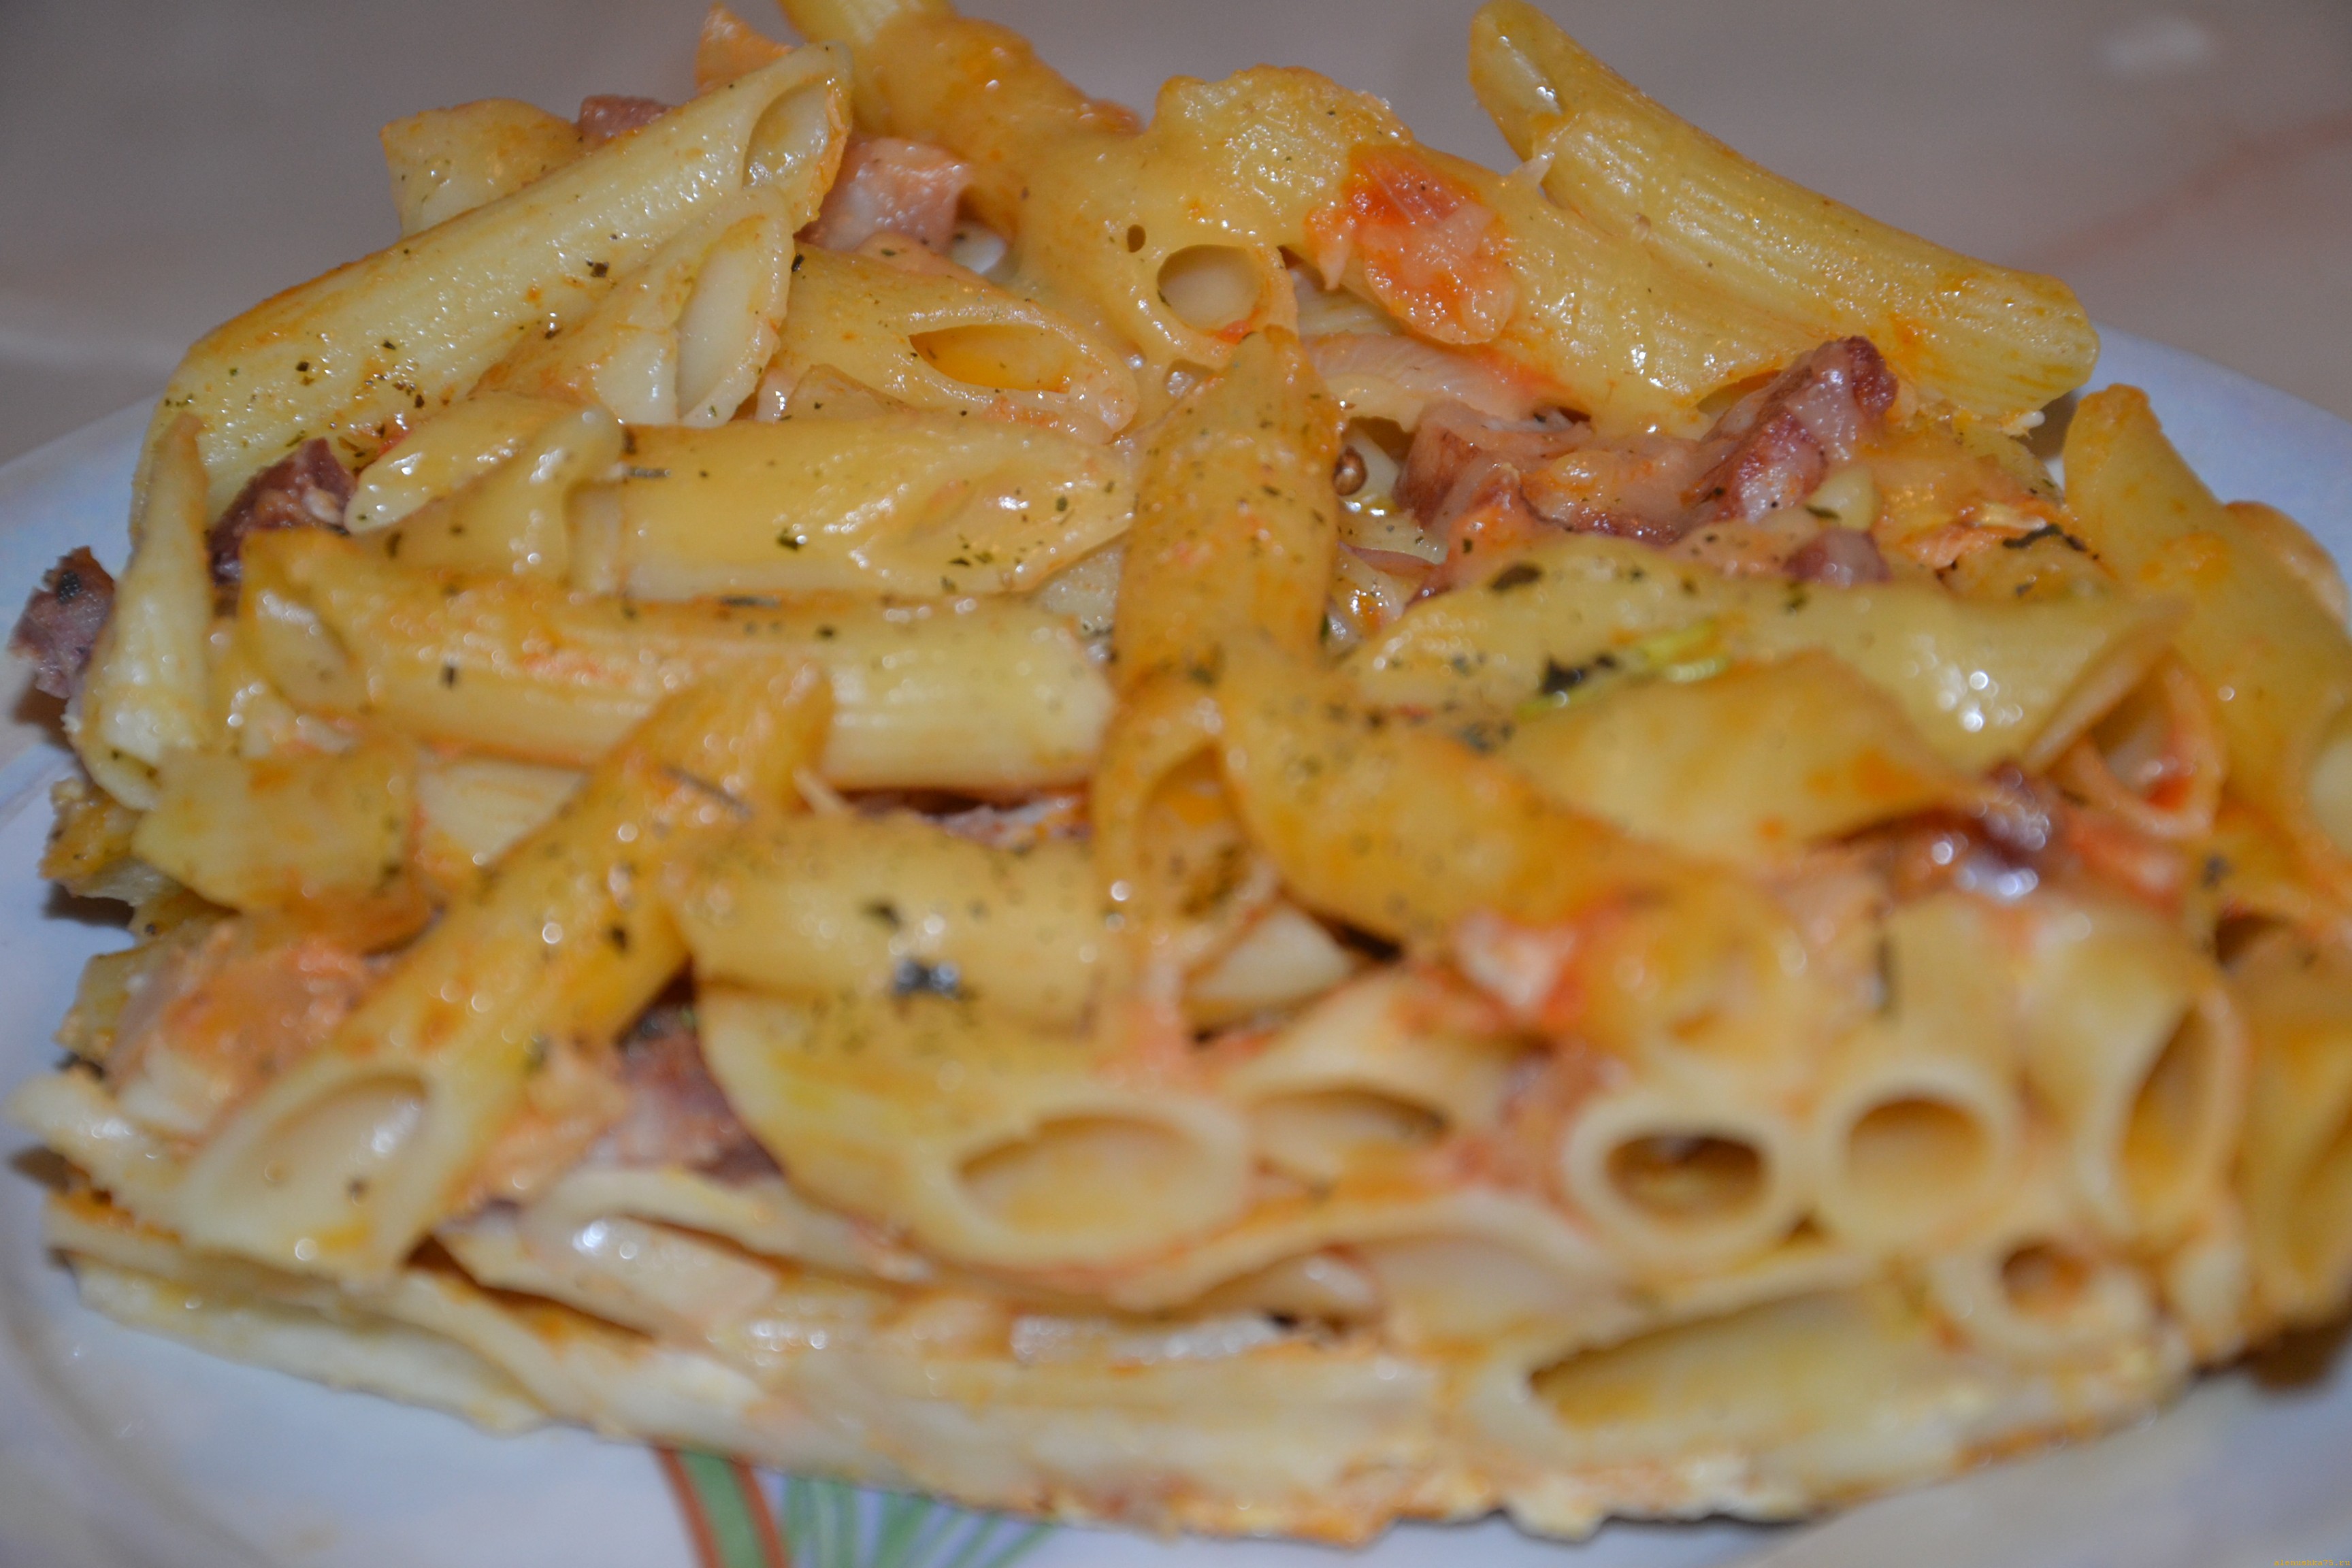 Рецепт макароны с мясом и сыром в духовке рецепт с фото